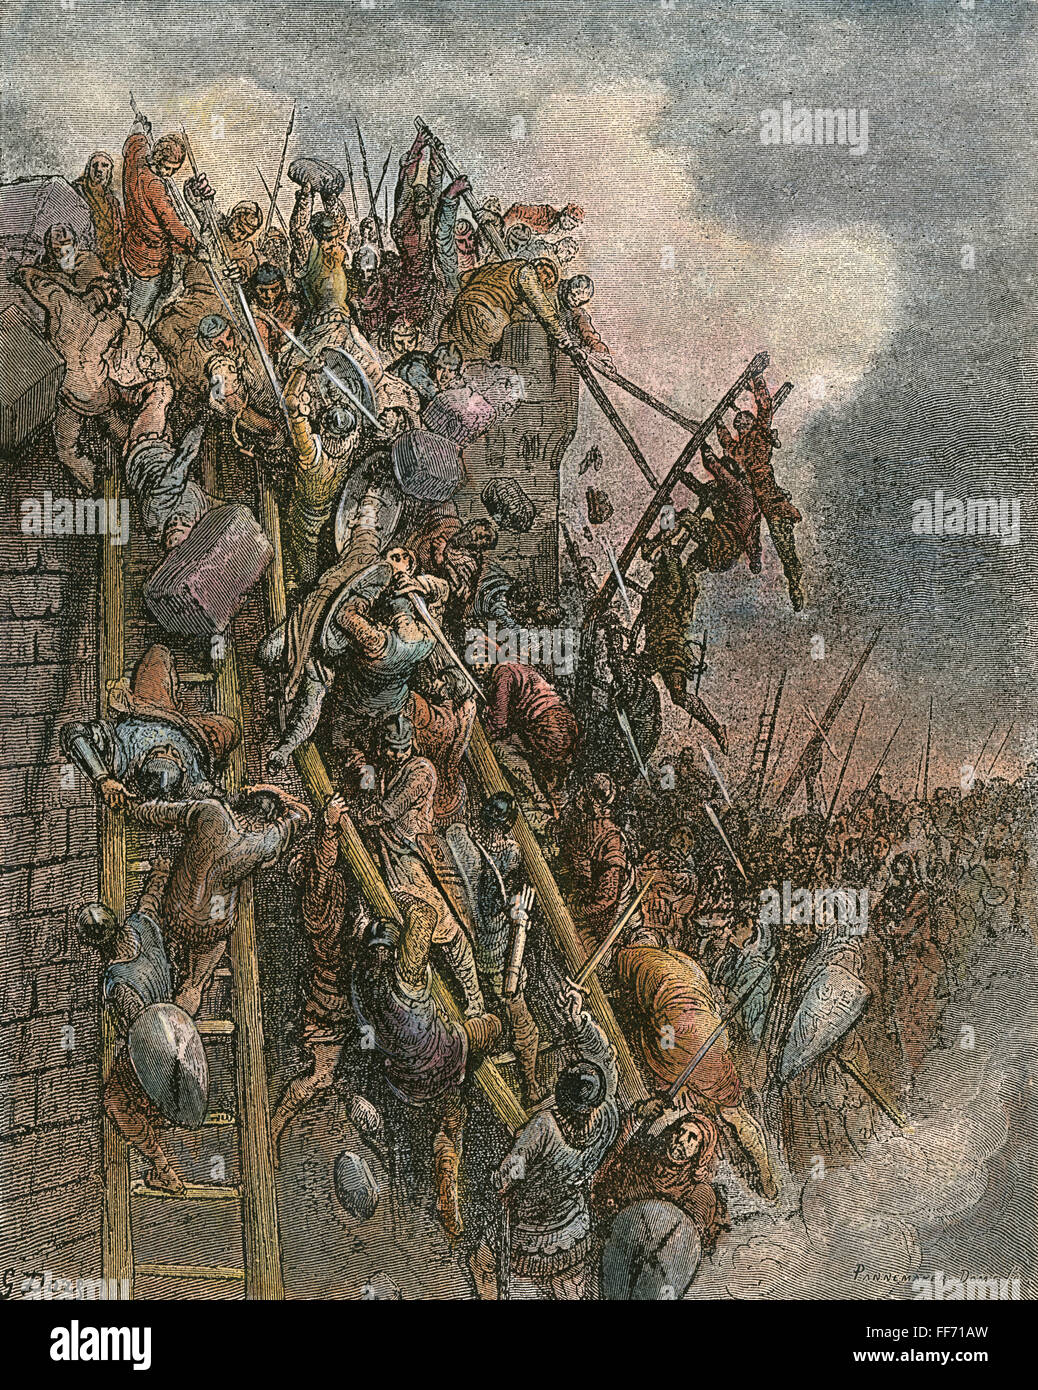 La guerre. /NWarfare au Moyen Âge. La capture d'Antioche croisés en 1098. Gravure, 19e siècle, après Gustav DorΘ. Banque D'Images